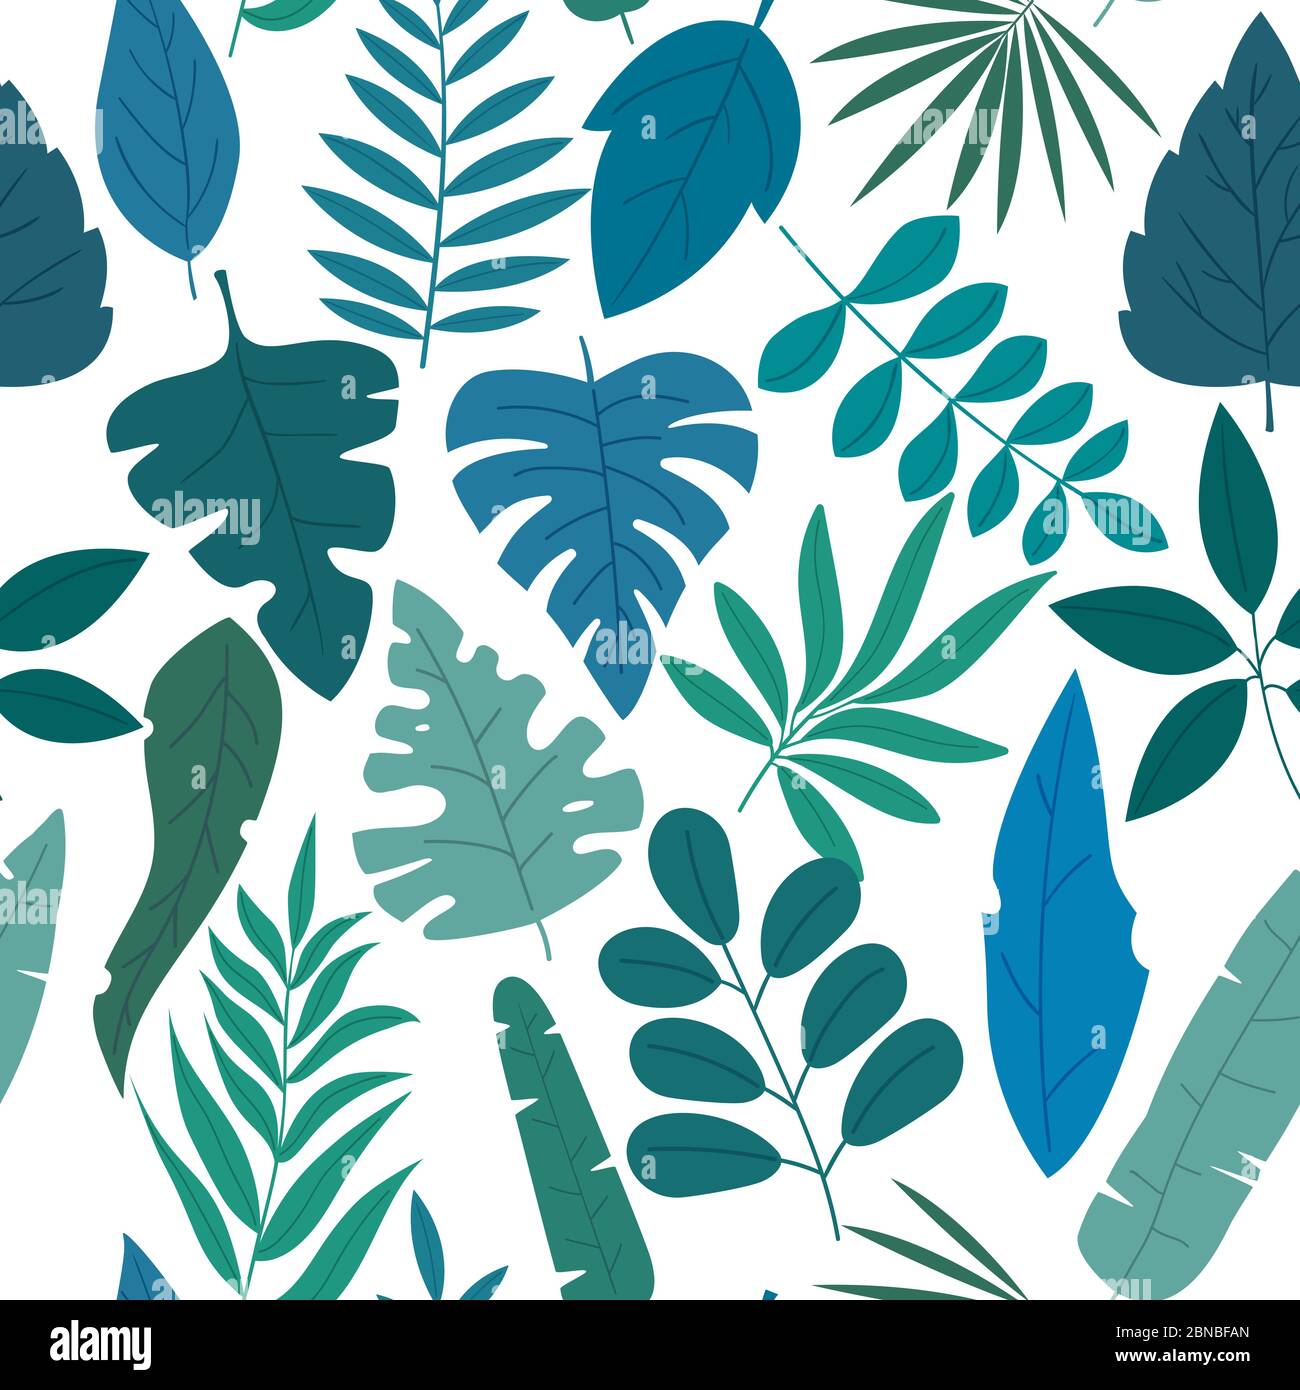 Muster-Set von Gruppen von verschiedenen blauen und grünen tropischen exotischen Blättern, Pflanzen und Früchten auf weißem Hintergrund. Sammlung von abgeschlossen und isoliert Stock Vektor